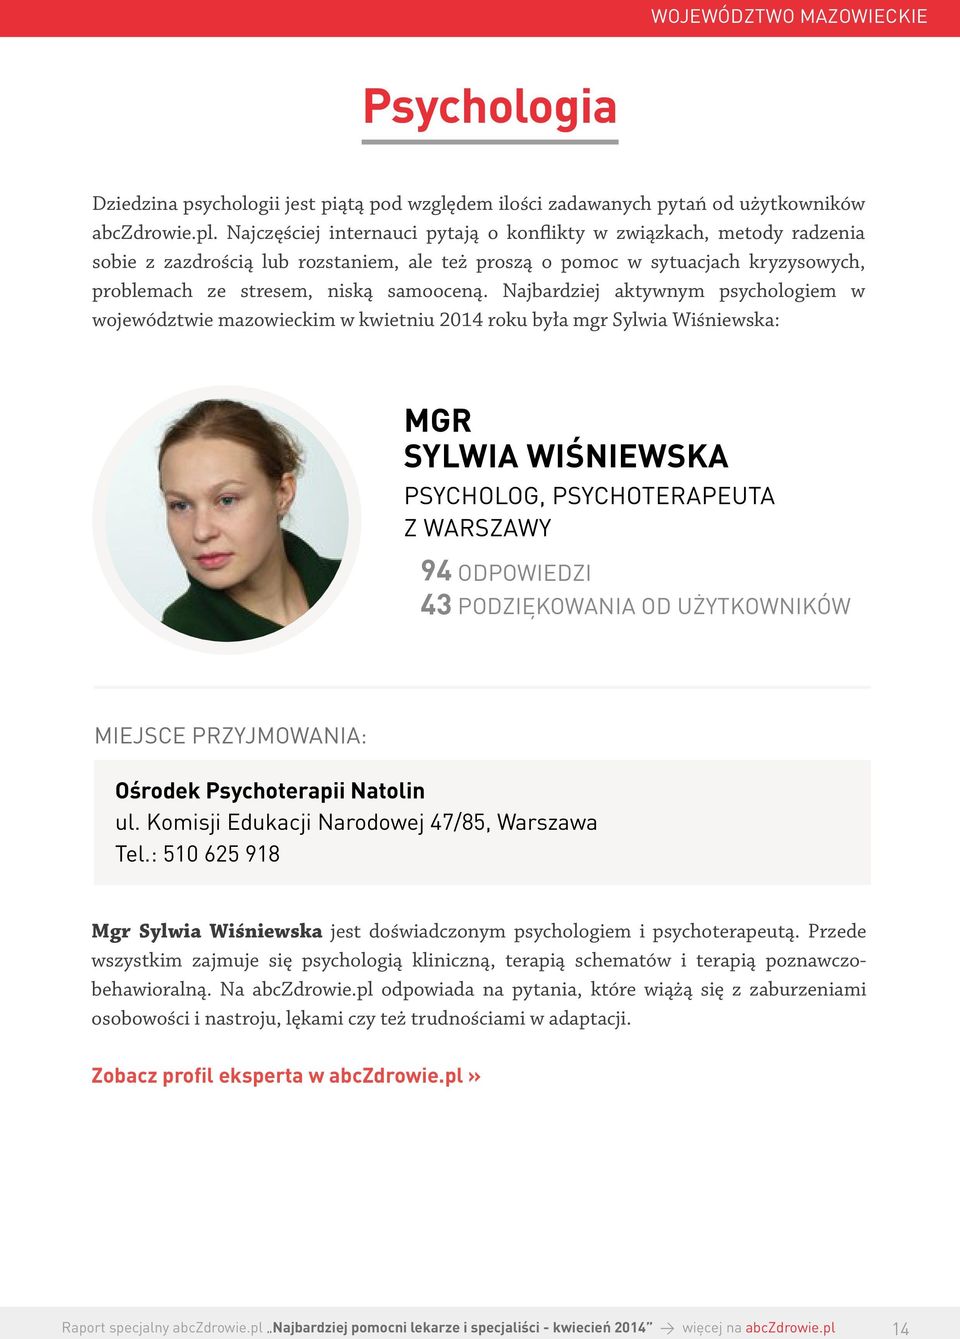 Najbardziej aktywnym psychologiem w województwie mazowieckim w kwietniu 2014 roku była mgr Sylwia Wiśniewska: MGR SYLWIA WIŚNIEWSKA PSYCHOLOG, PSYCHOTERAPEUTA Z WARSZAWY 94 43 PODZIĘKOWANIA OD